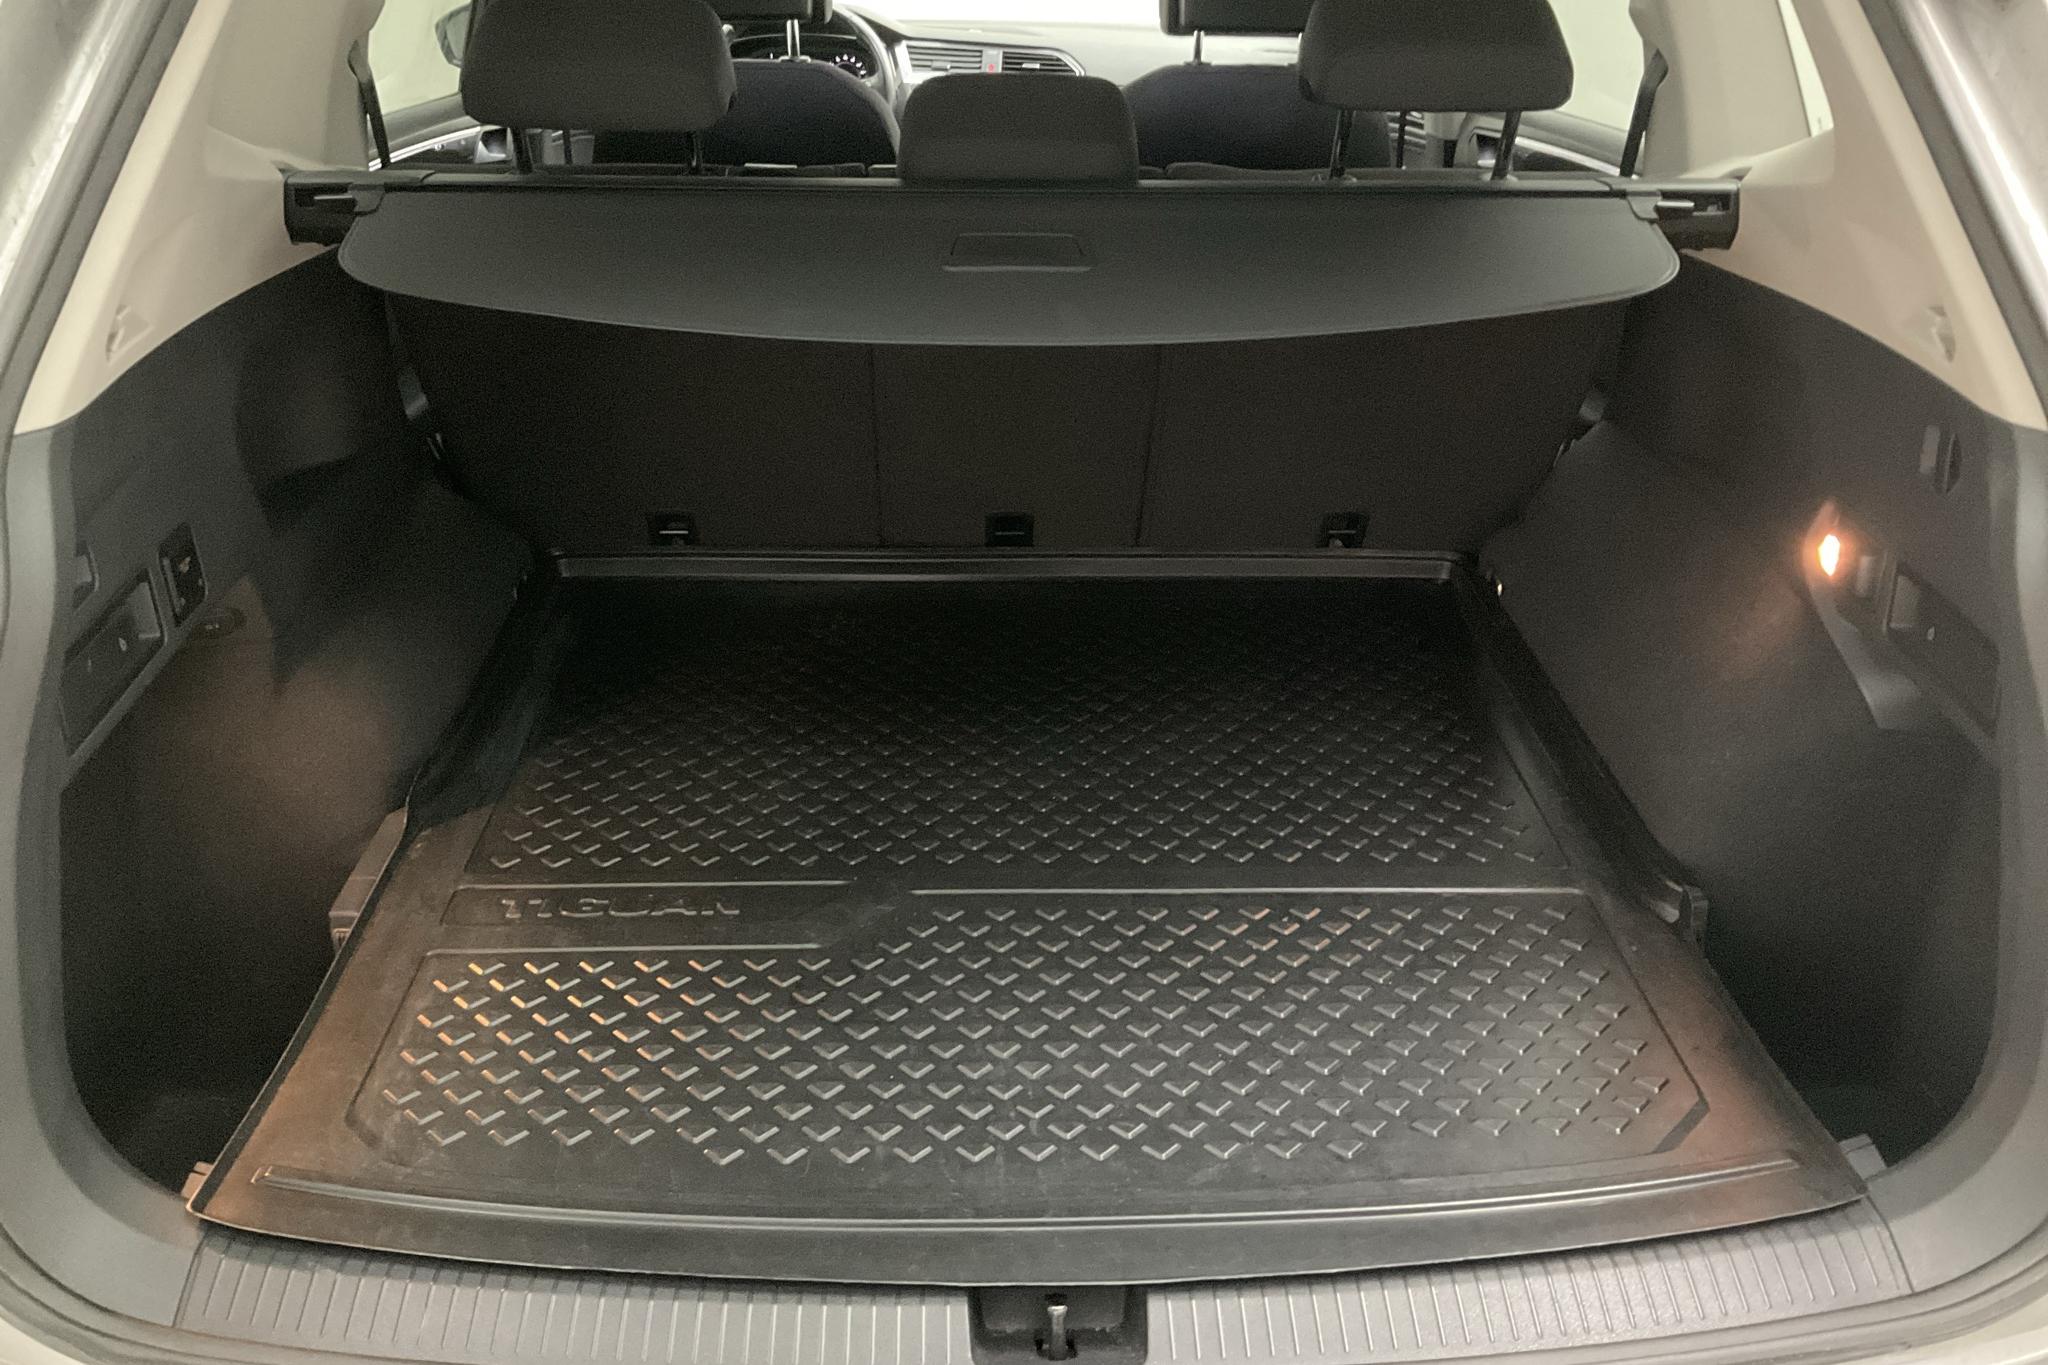 VW Tiguan Allspace 2.0 TDI 4MOTION (190hk) - 119 310 km - Automatic - silver - 2020